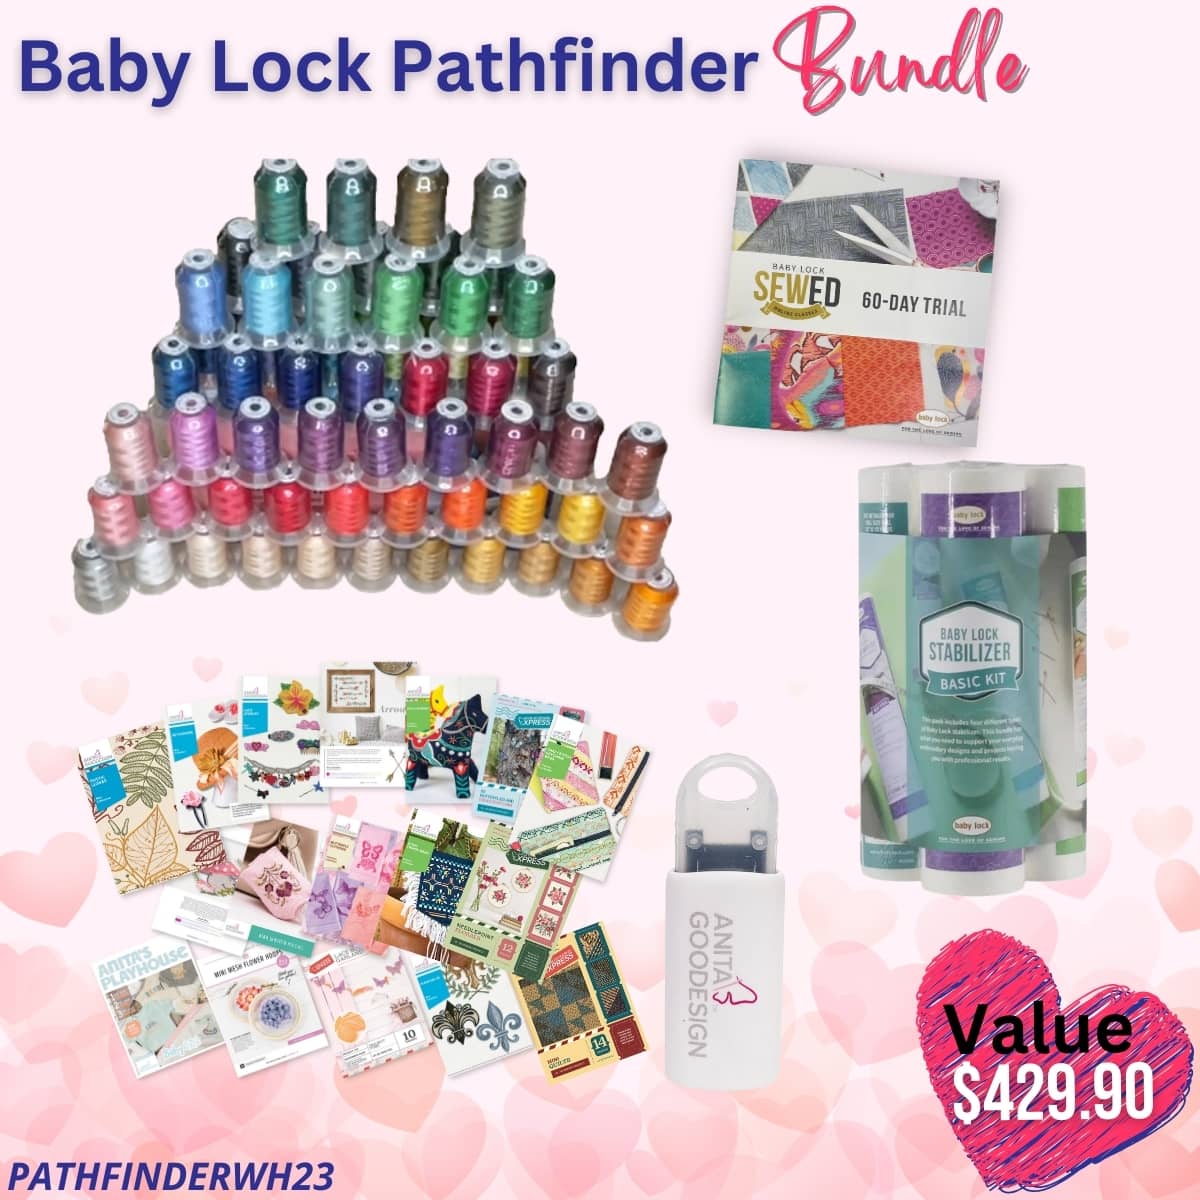 Baby Lock Pathfinder bundle for Valentine's Sale